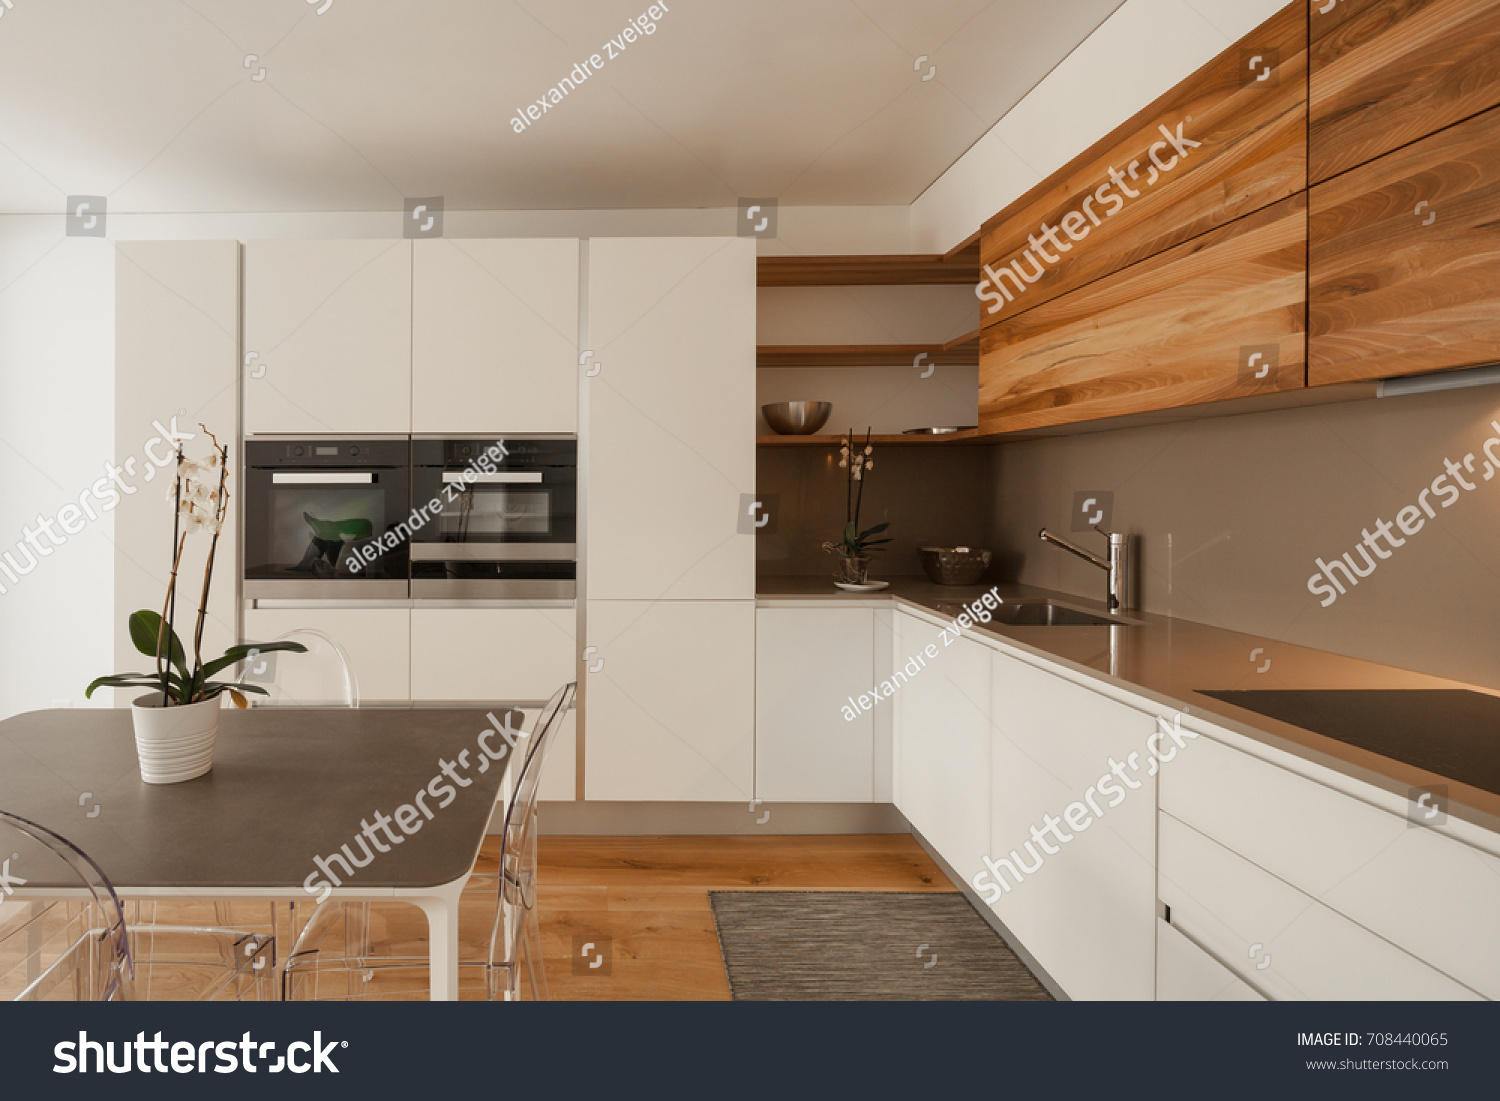 stock-photo-elegant-modern-kitchen-nobody-inside-708440065.jpg